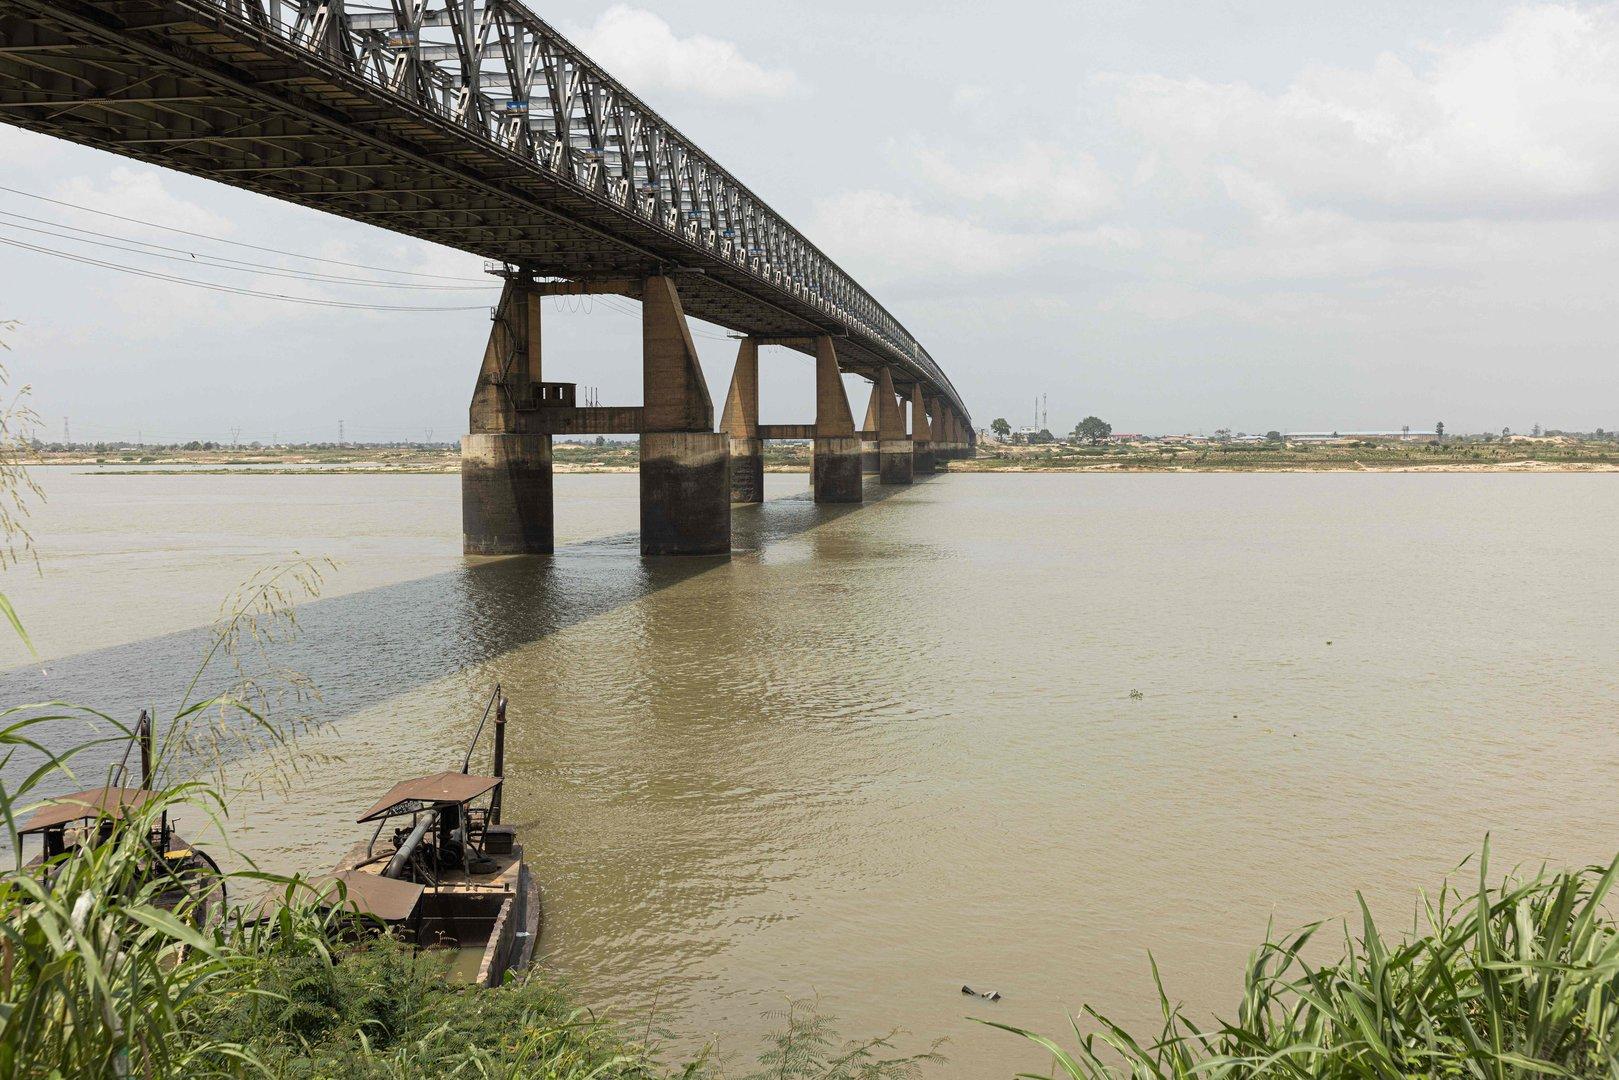 Polizei: Mehr als 100 Tote bei Bootsunfall auf Fluss in Nigeria